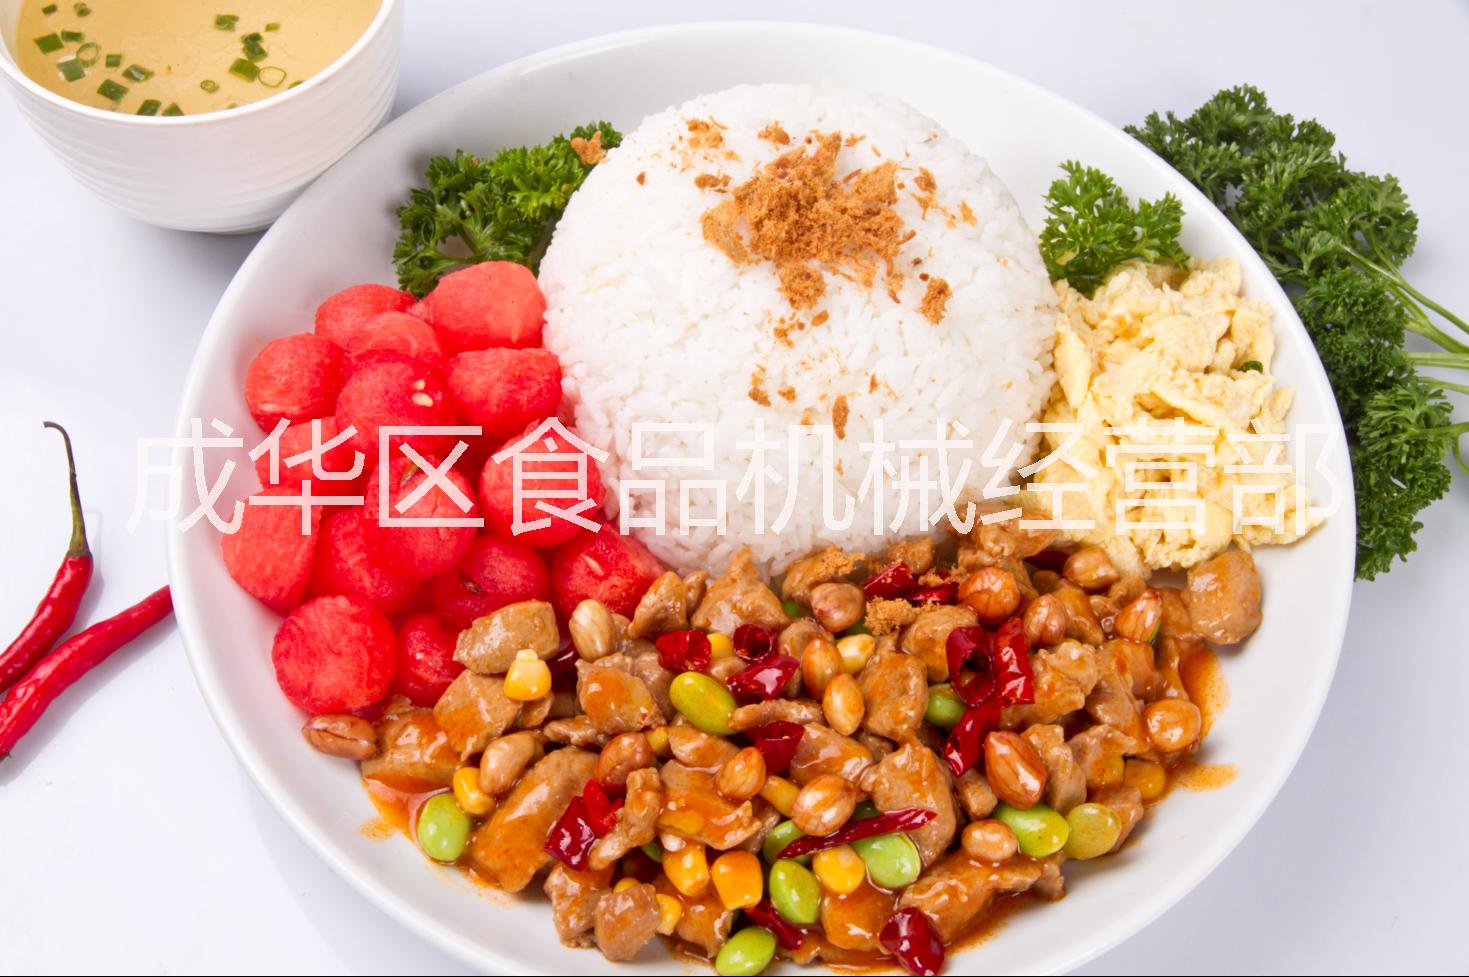 中式快餐速食料理餐包丨面馆调理包批发